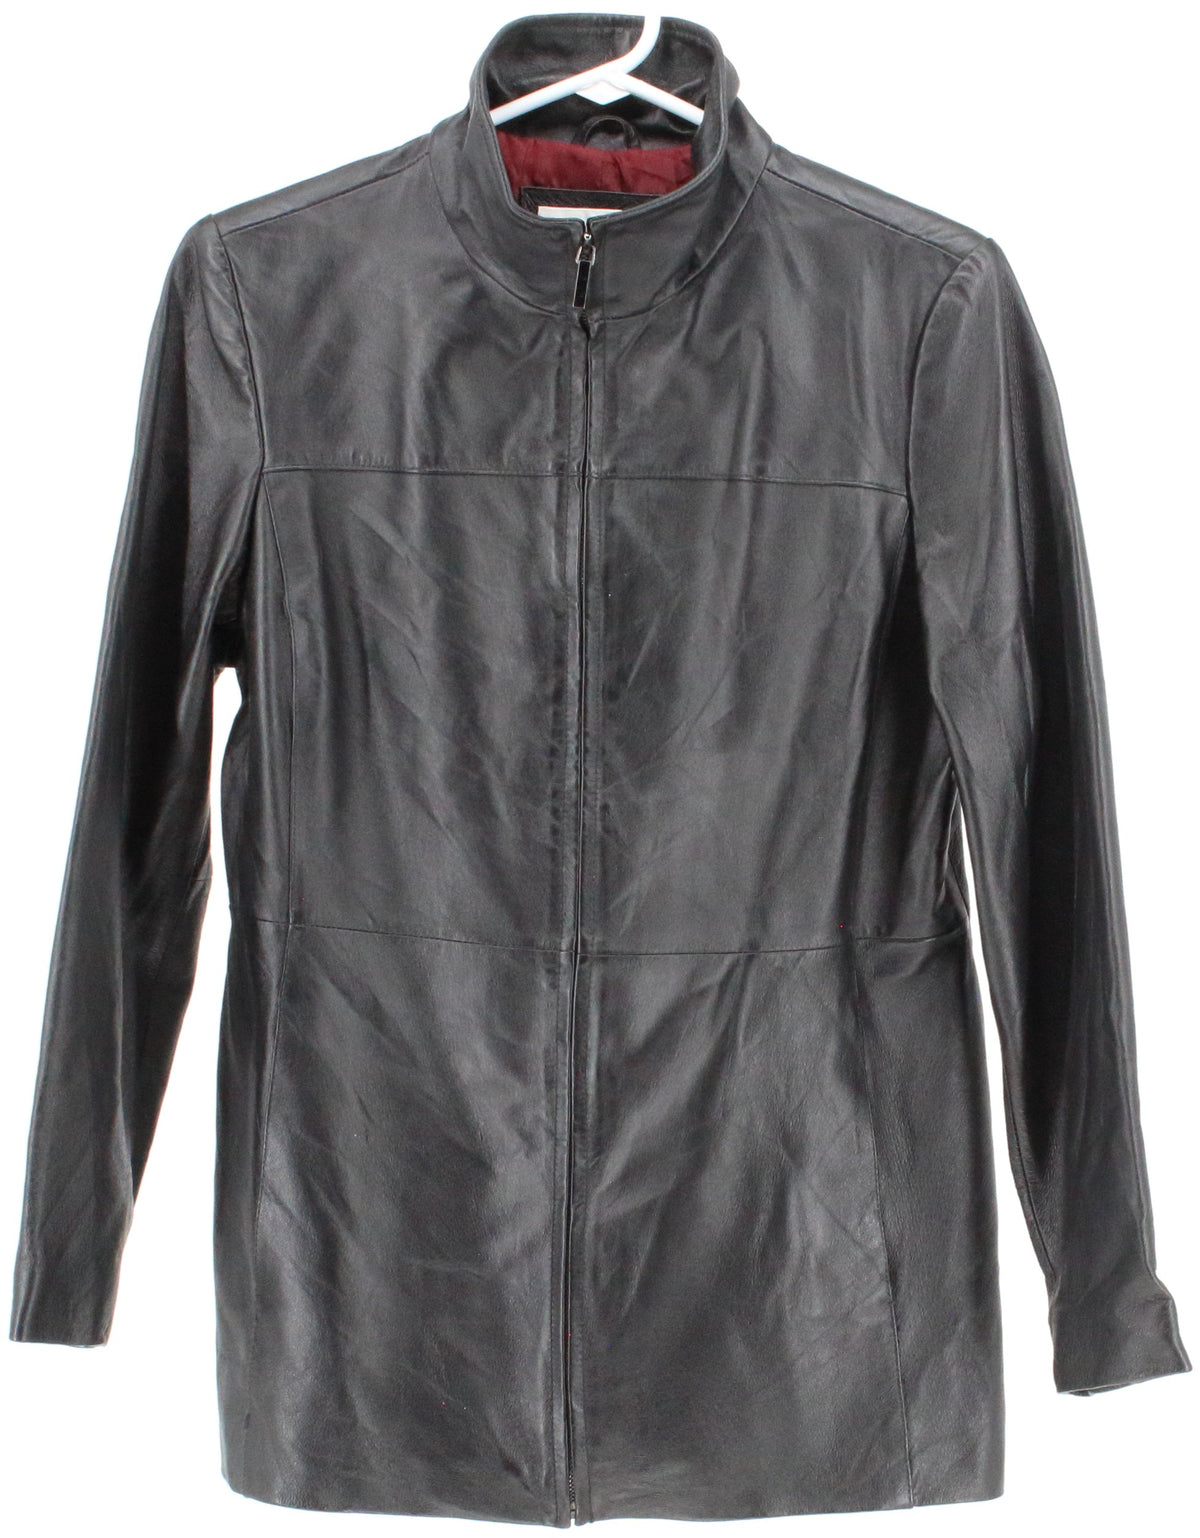 Worthington Petite Black Leather Jacket